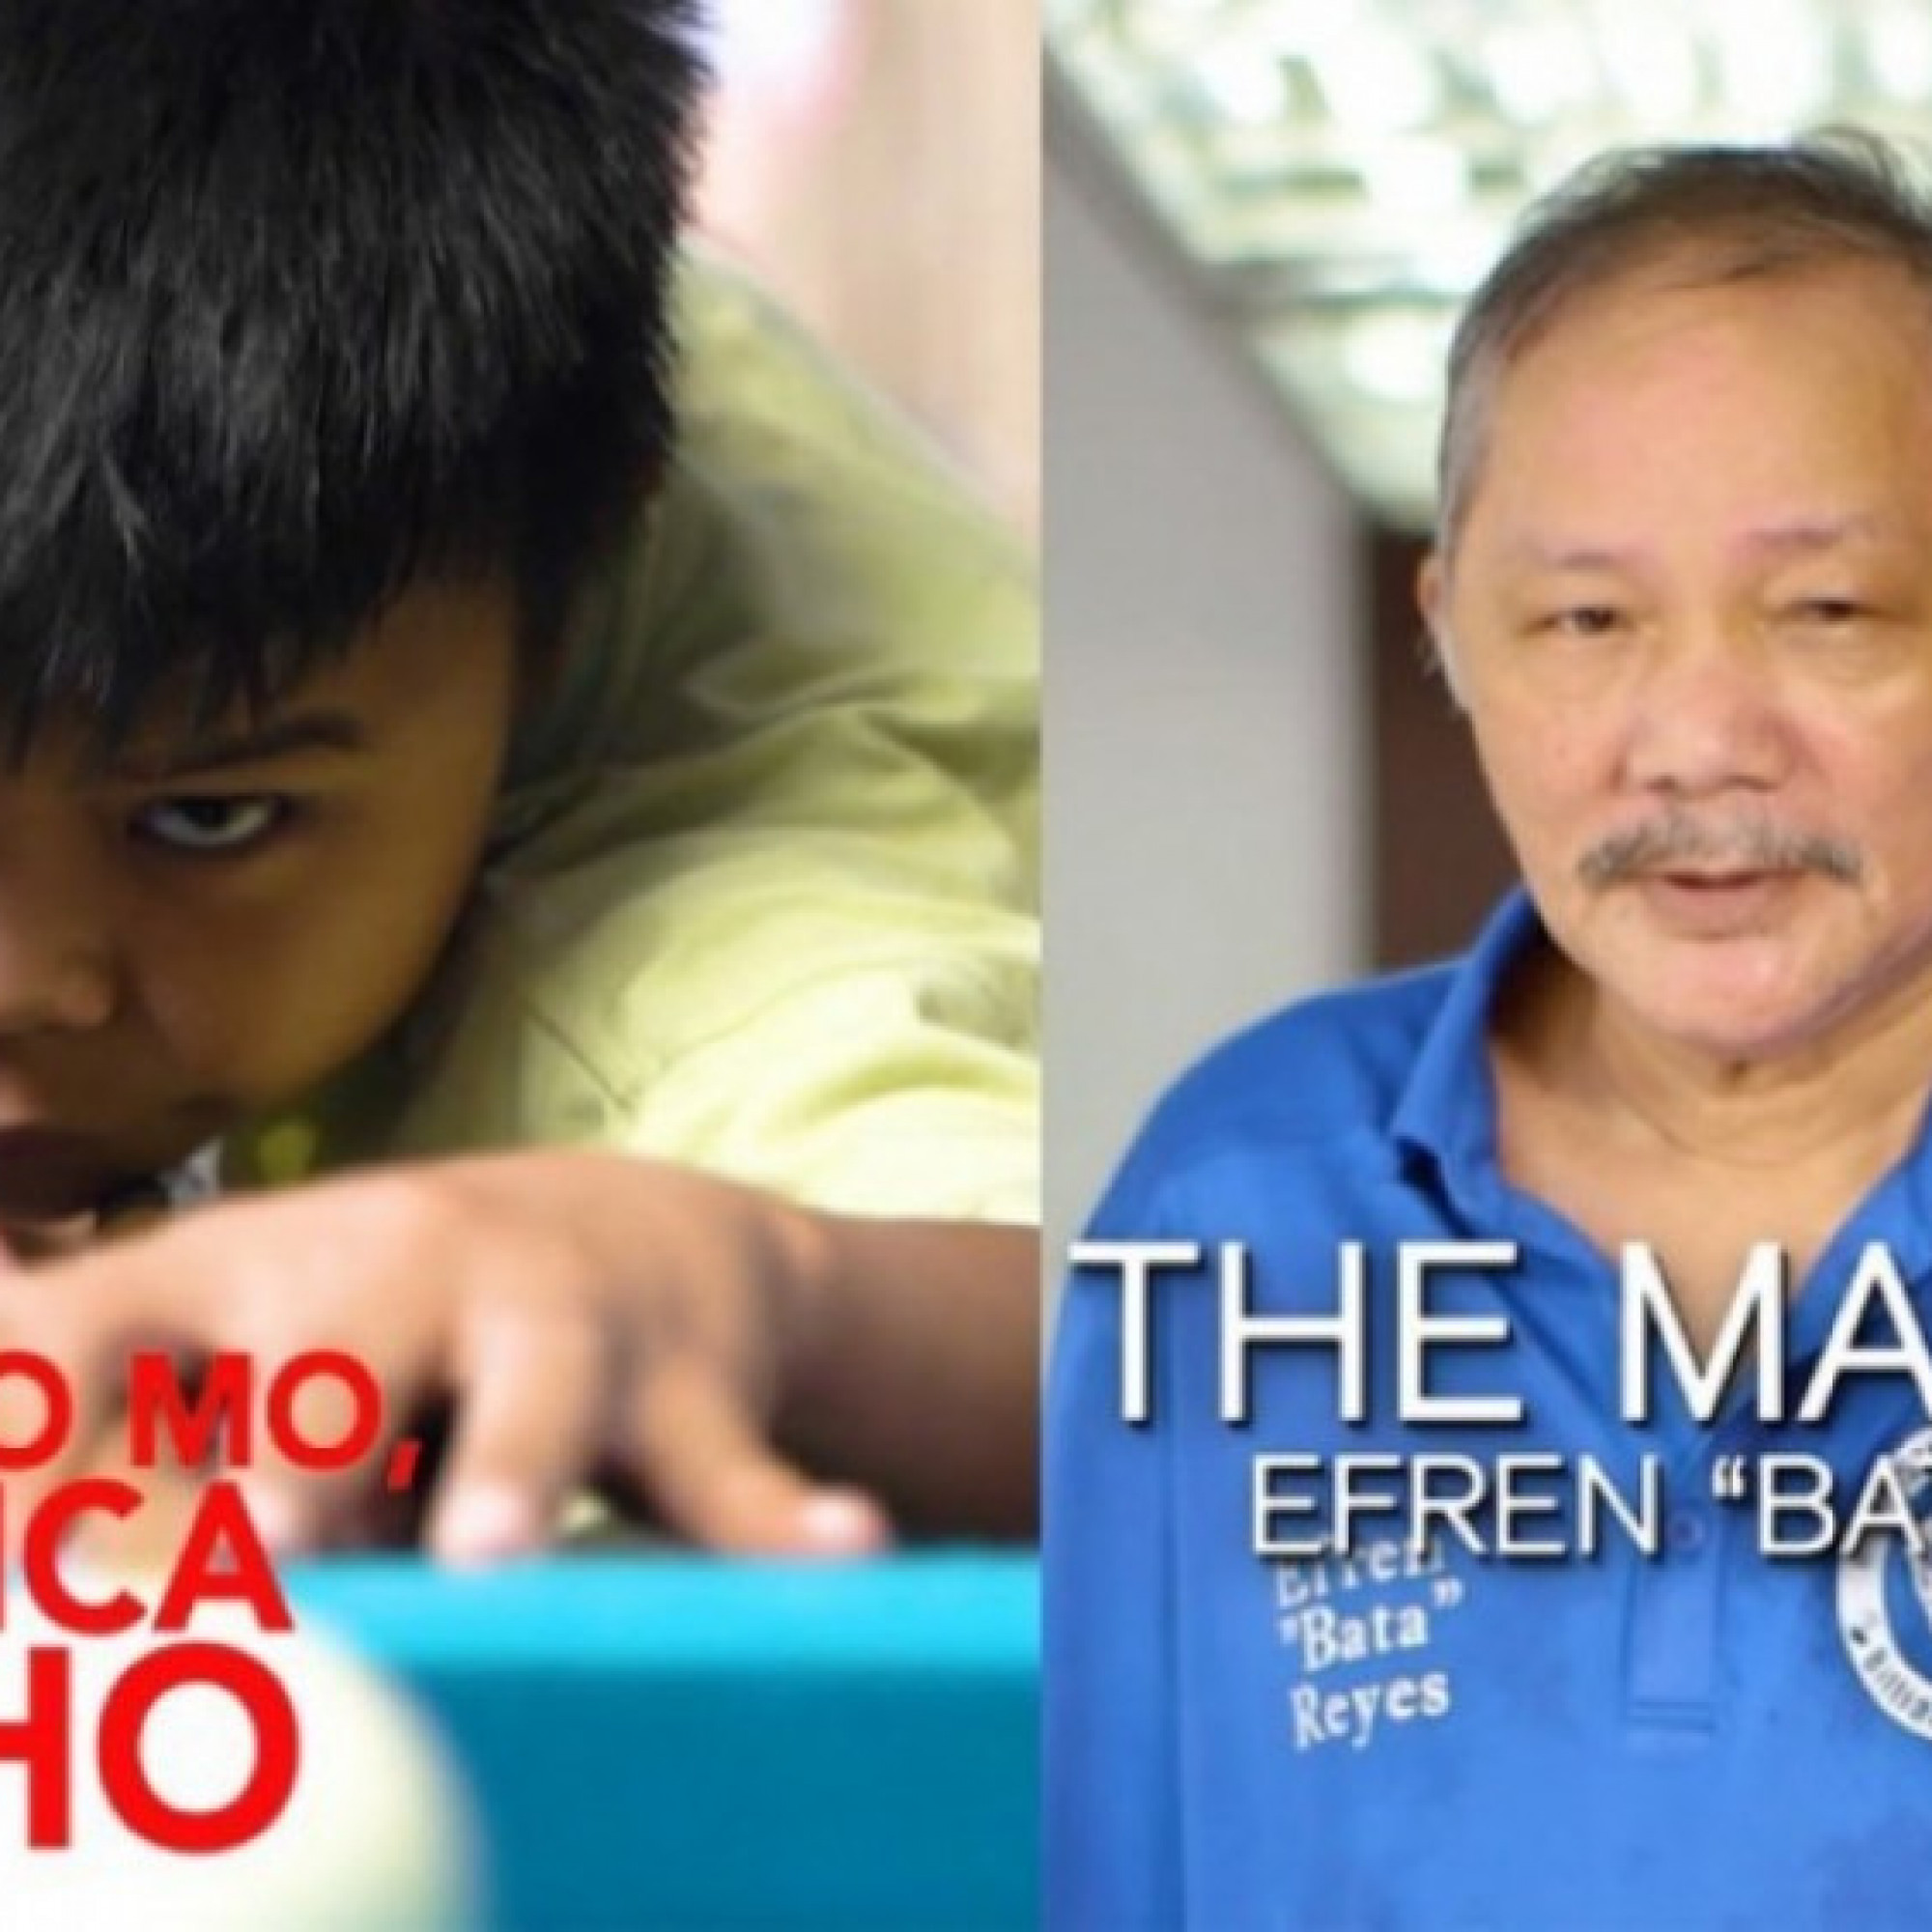  - Bi-a Philippines có Efren Reyes mới: Được huyền thoại "chỉ tay giao việc"